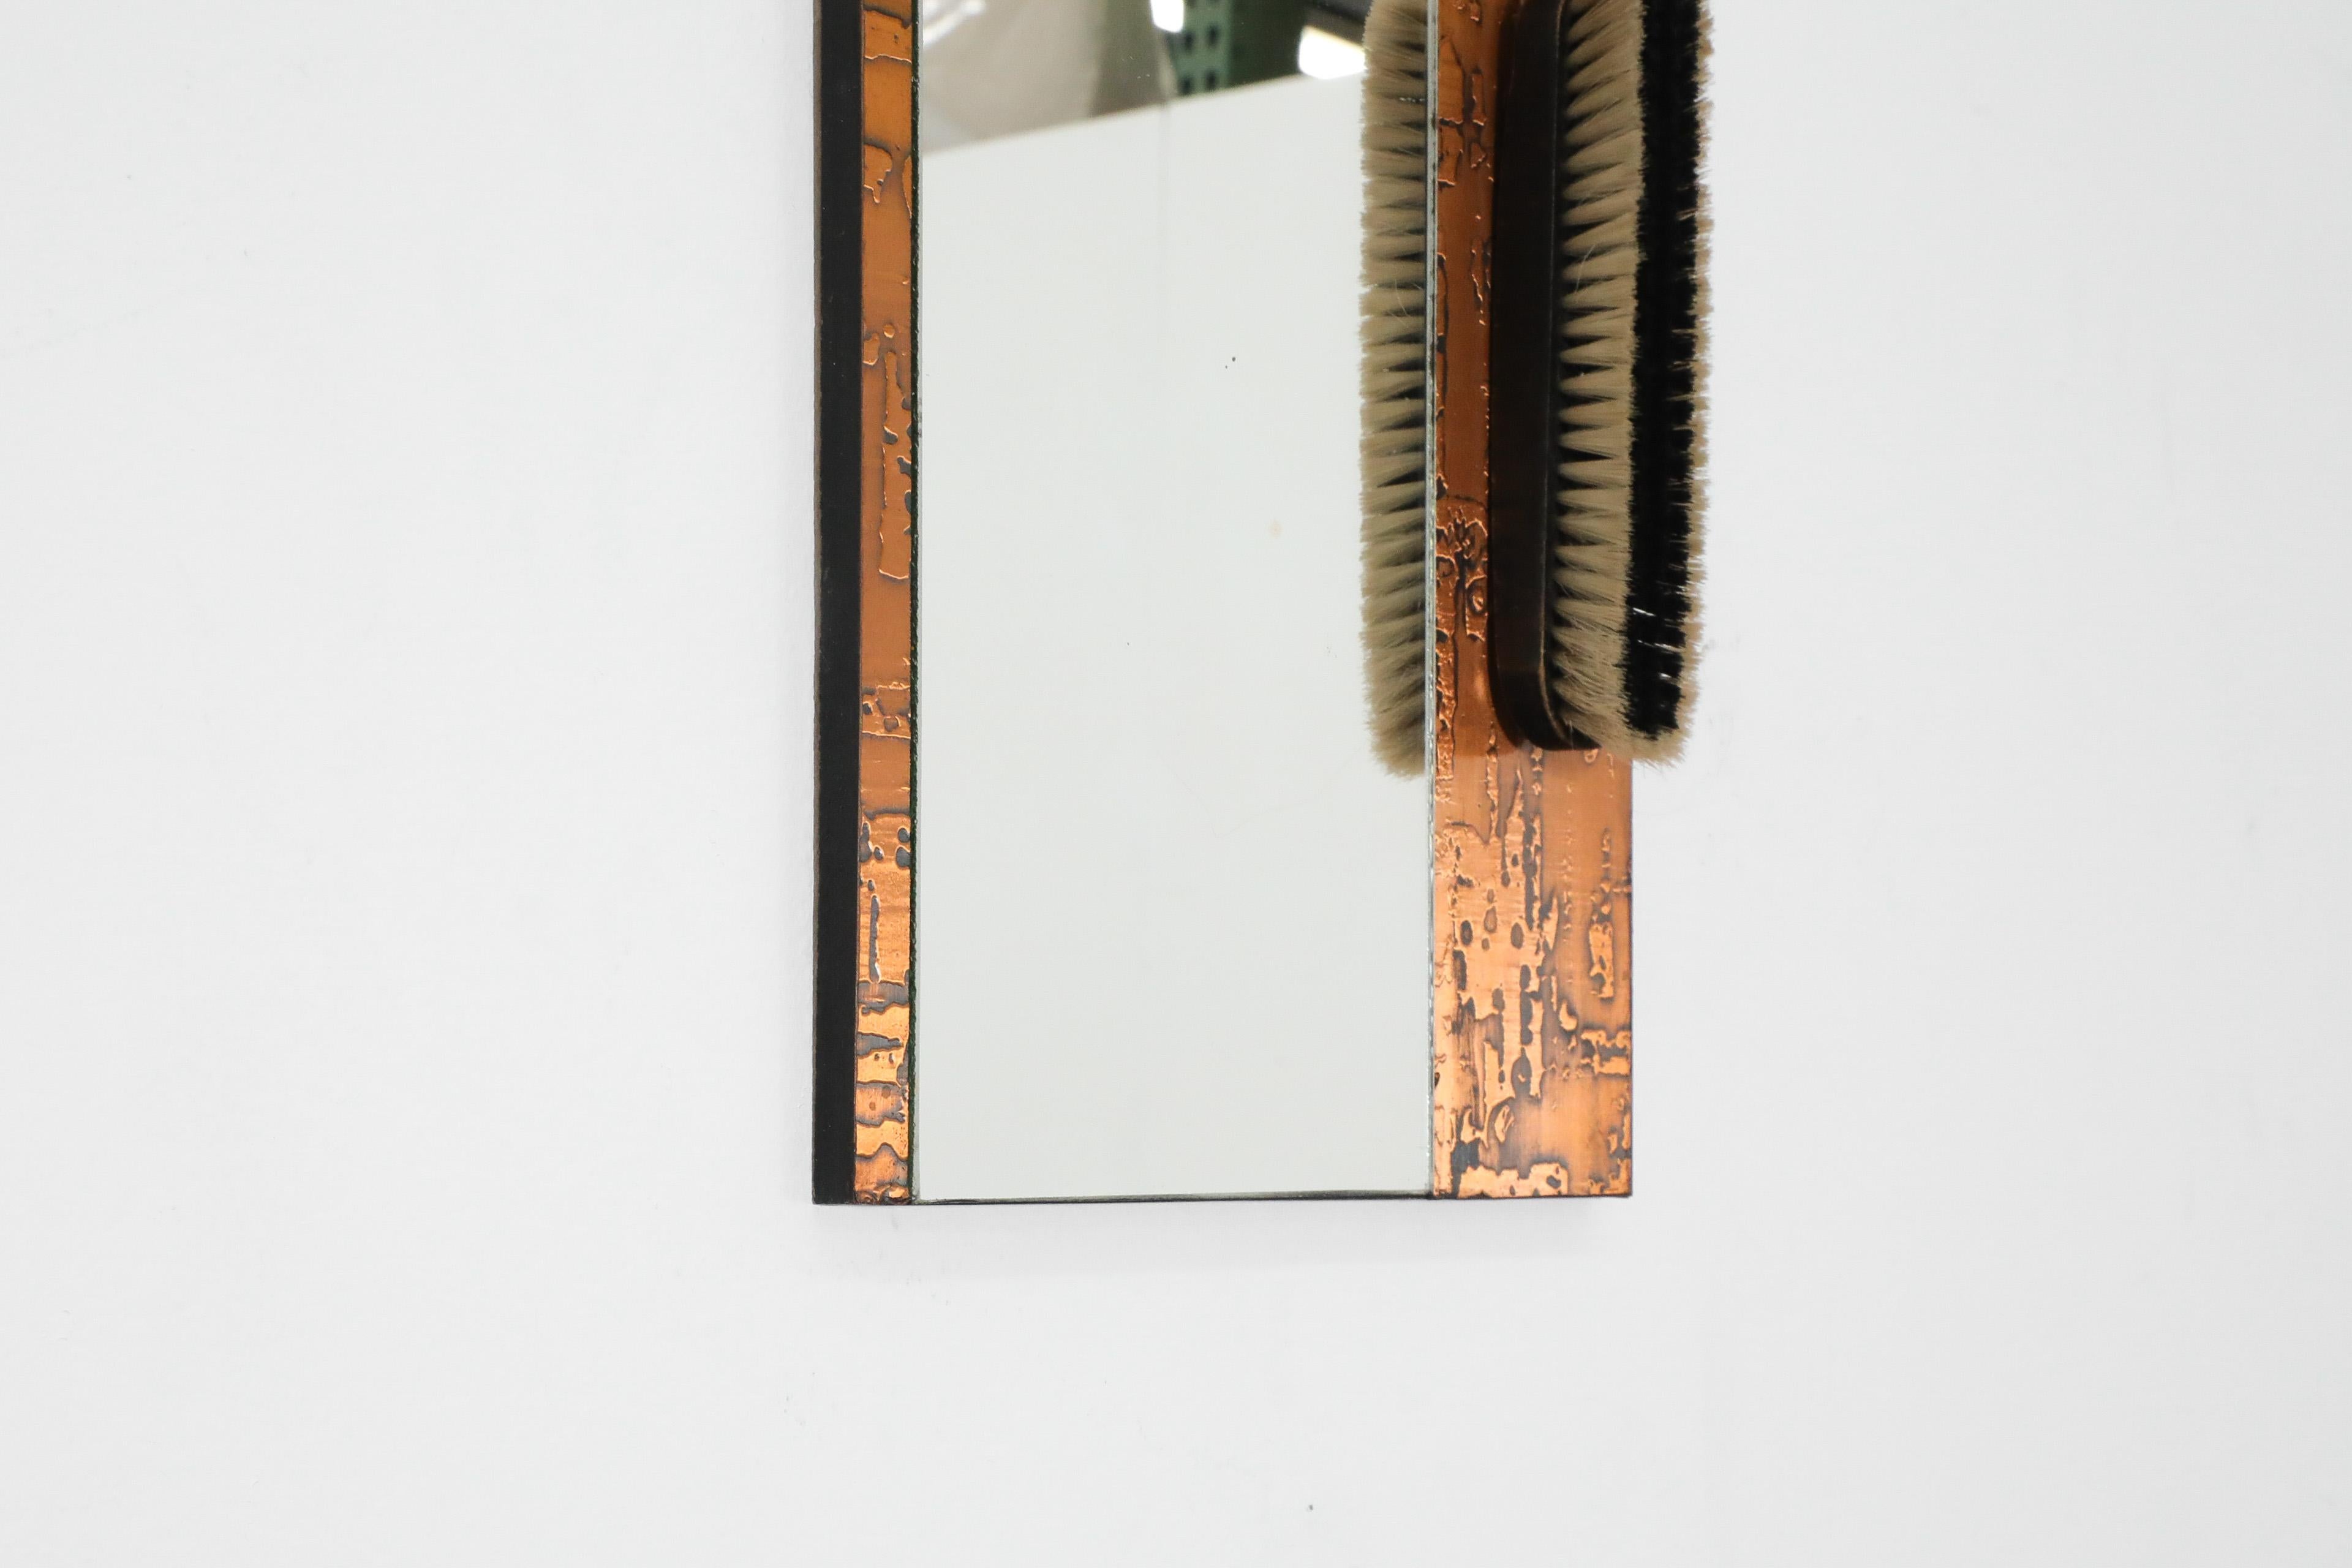 1970s, Santambrogio & De Berti styl Wall Mount Copper Butler's Mirror with Brush For Sale 5